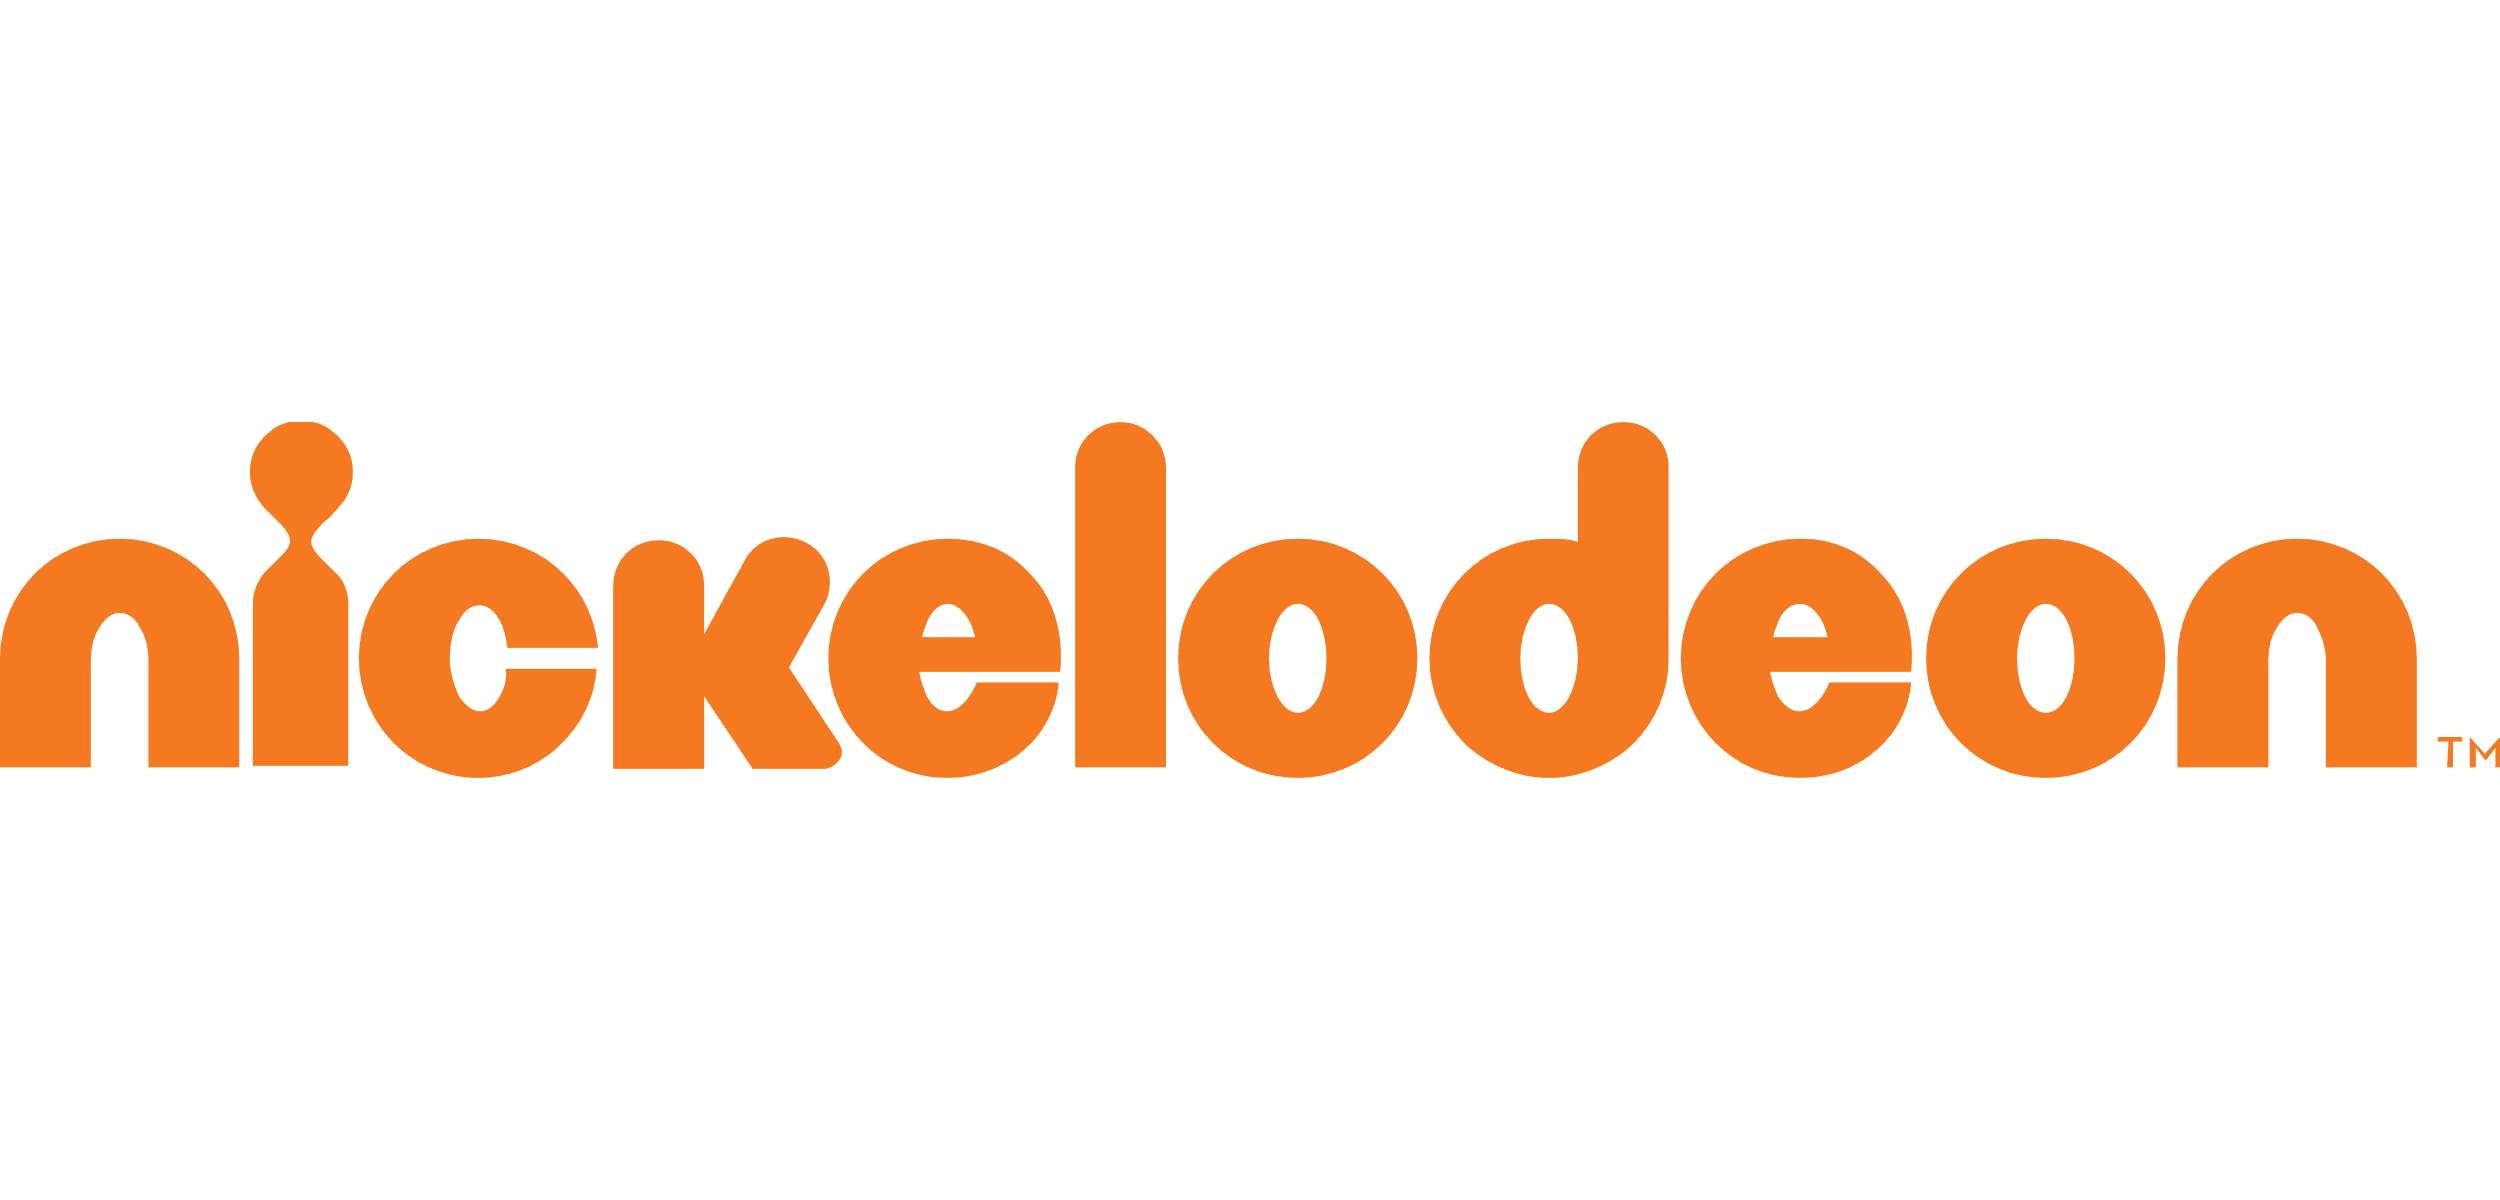 5. Nickelodeon (Tier 3)